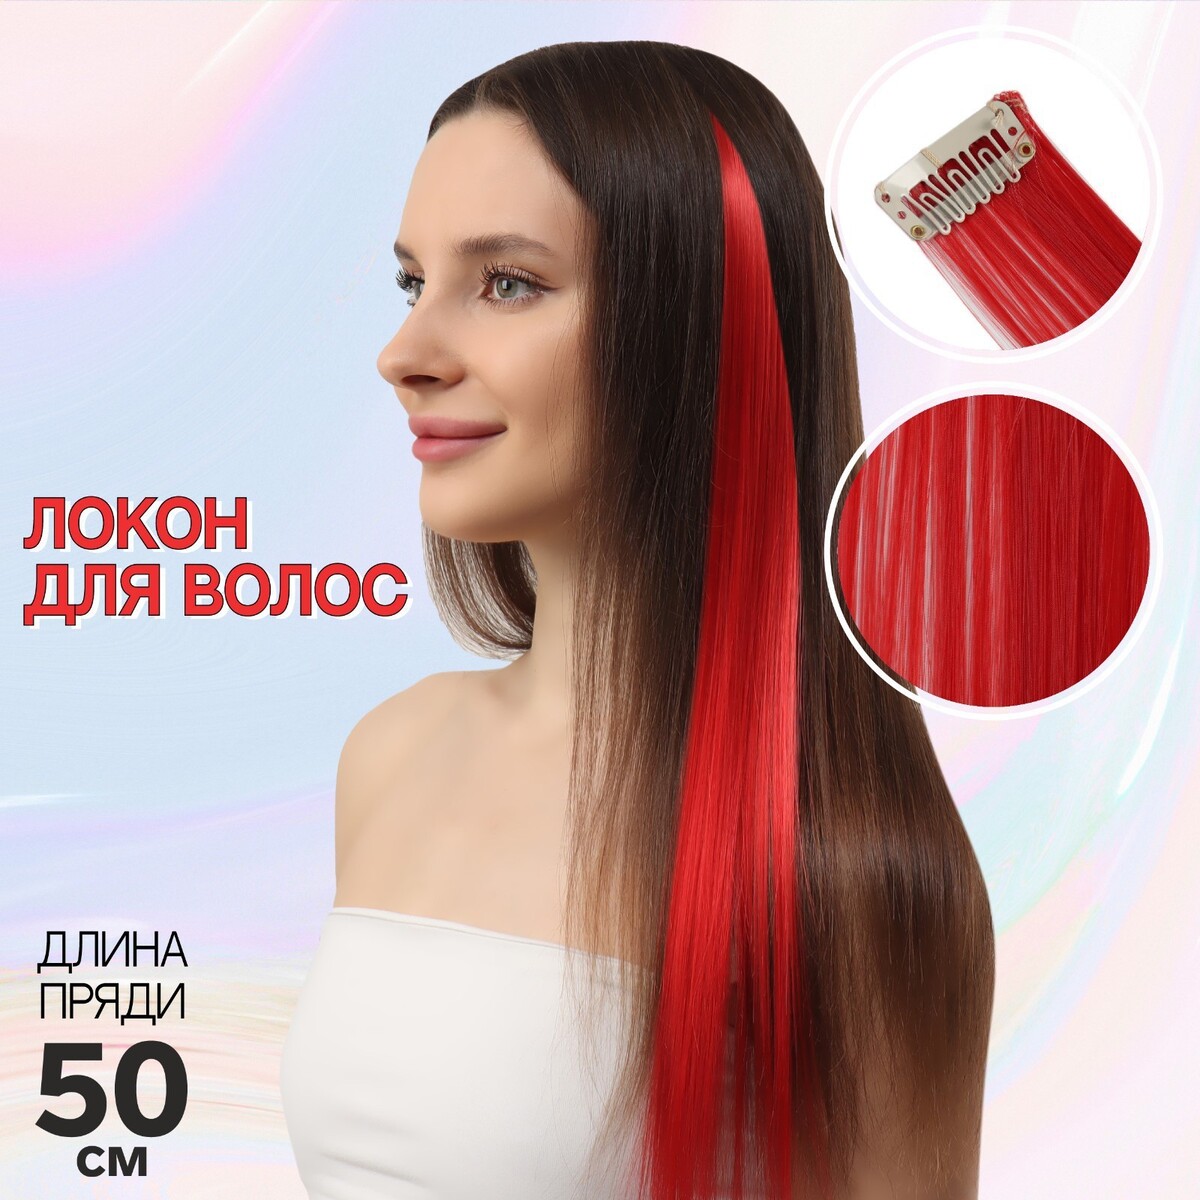 Локон накладной, прямой волос, на заколке, 50 см, 5 гр, цвет красный локон накладной единорог прямой волос на заколке 40 см микс